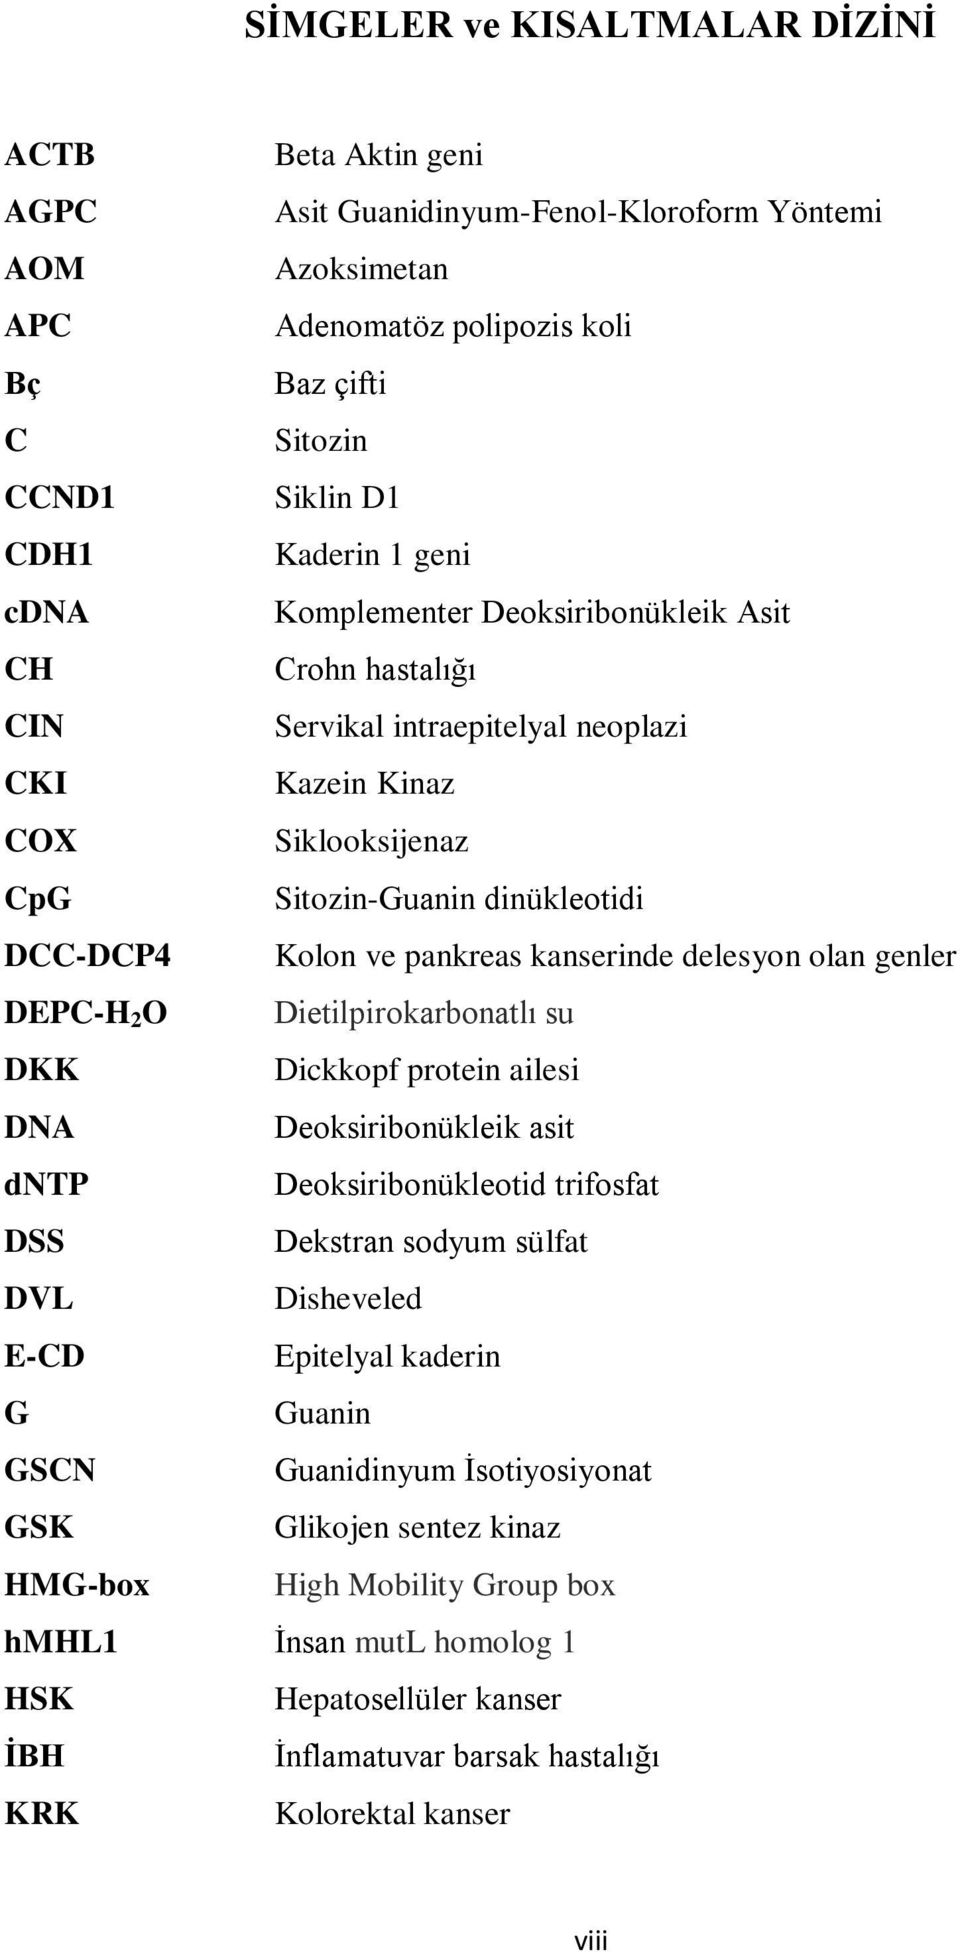 kanserinde delesyon olan genler DEPC-H 2 O Dietilpirokarbonatlı su DKK Dickkopf protein ailesi DNA Deoksiribonükleik asit dntp Deoksiribonükleotid trifosfat DSS Dekstran sodyum sülfat DVL Disheveled